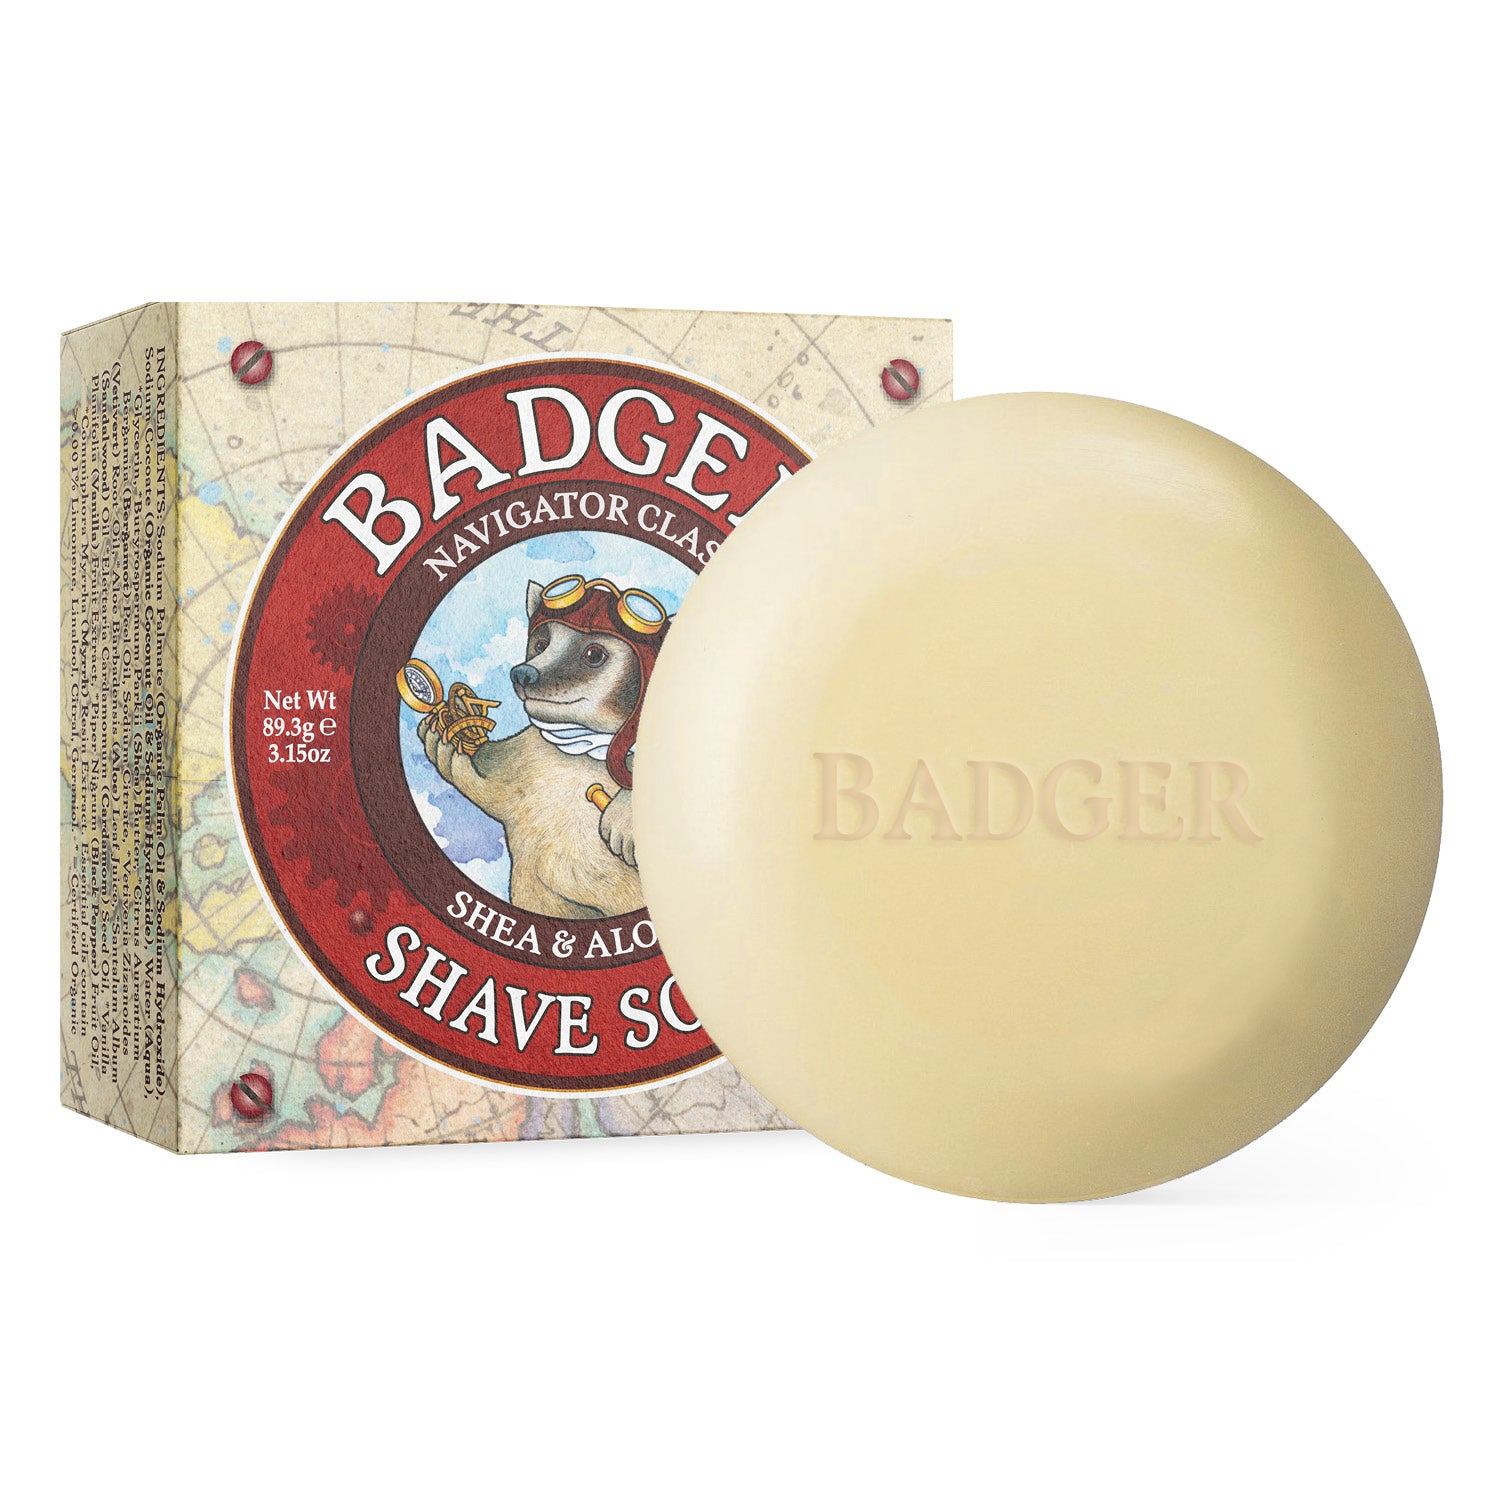 https://www.badgerbalm.com/cdn/shop/products/shaving-soap-bar-Badger-contents_1500x.jpg?v=1642186043